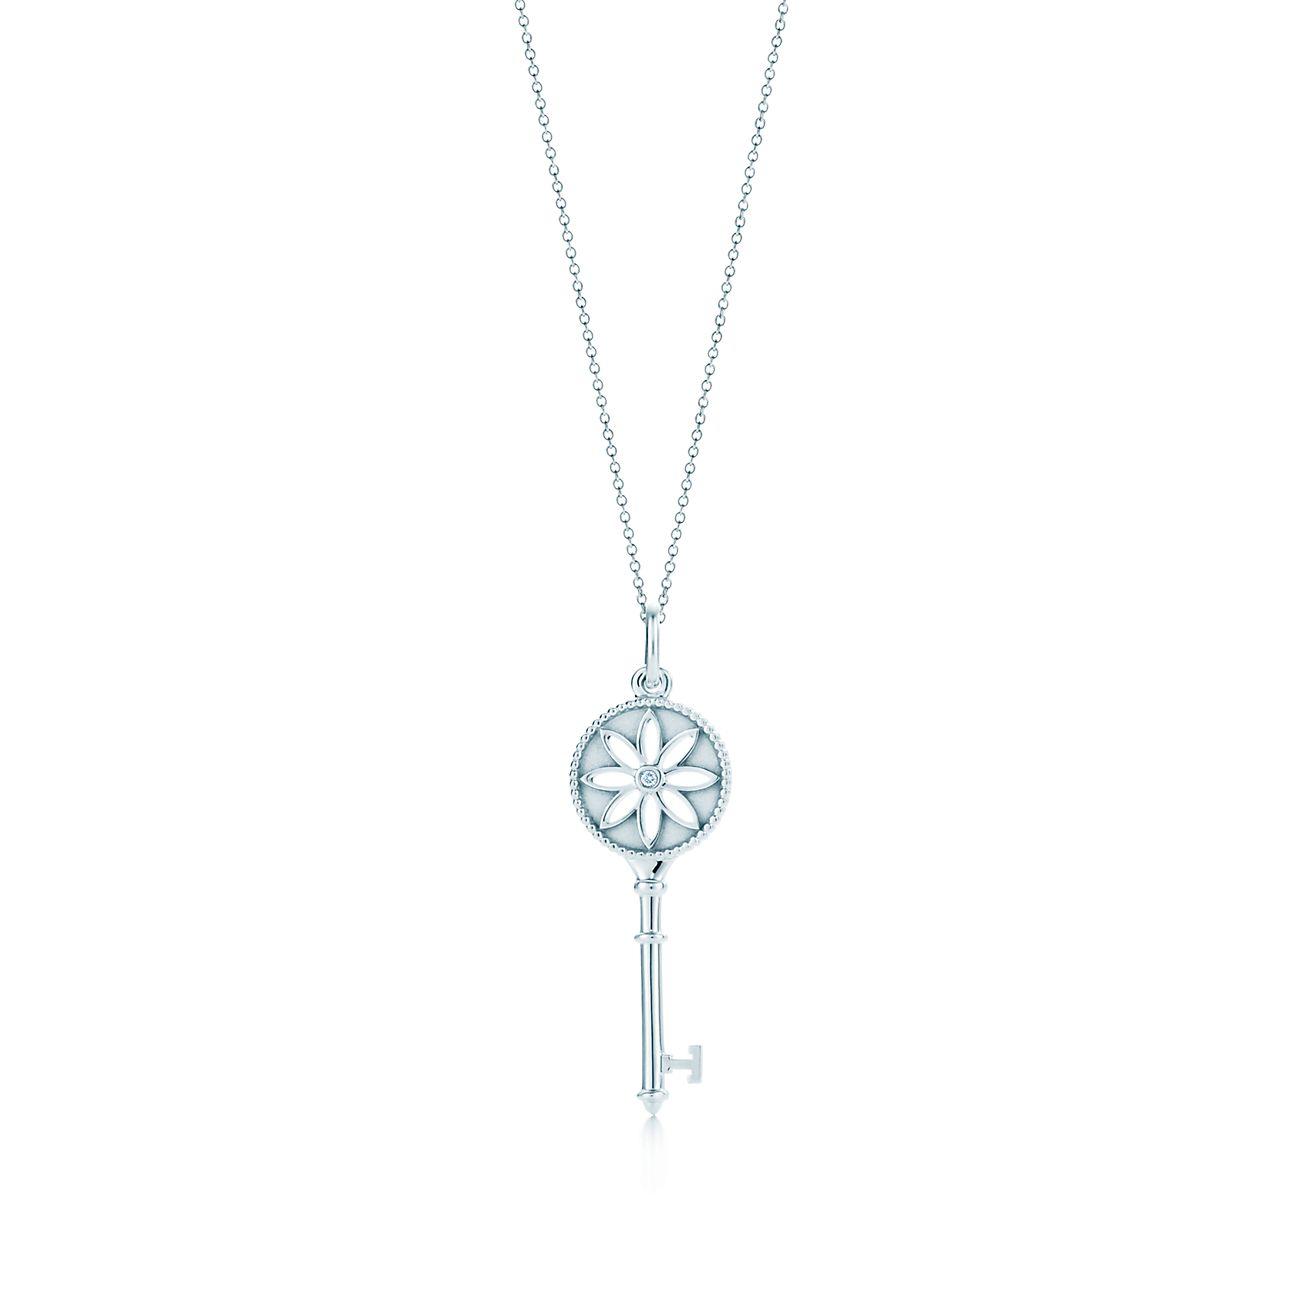 Tiffany Keys daisy key pendant in 